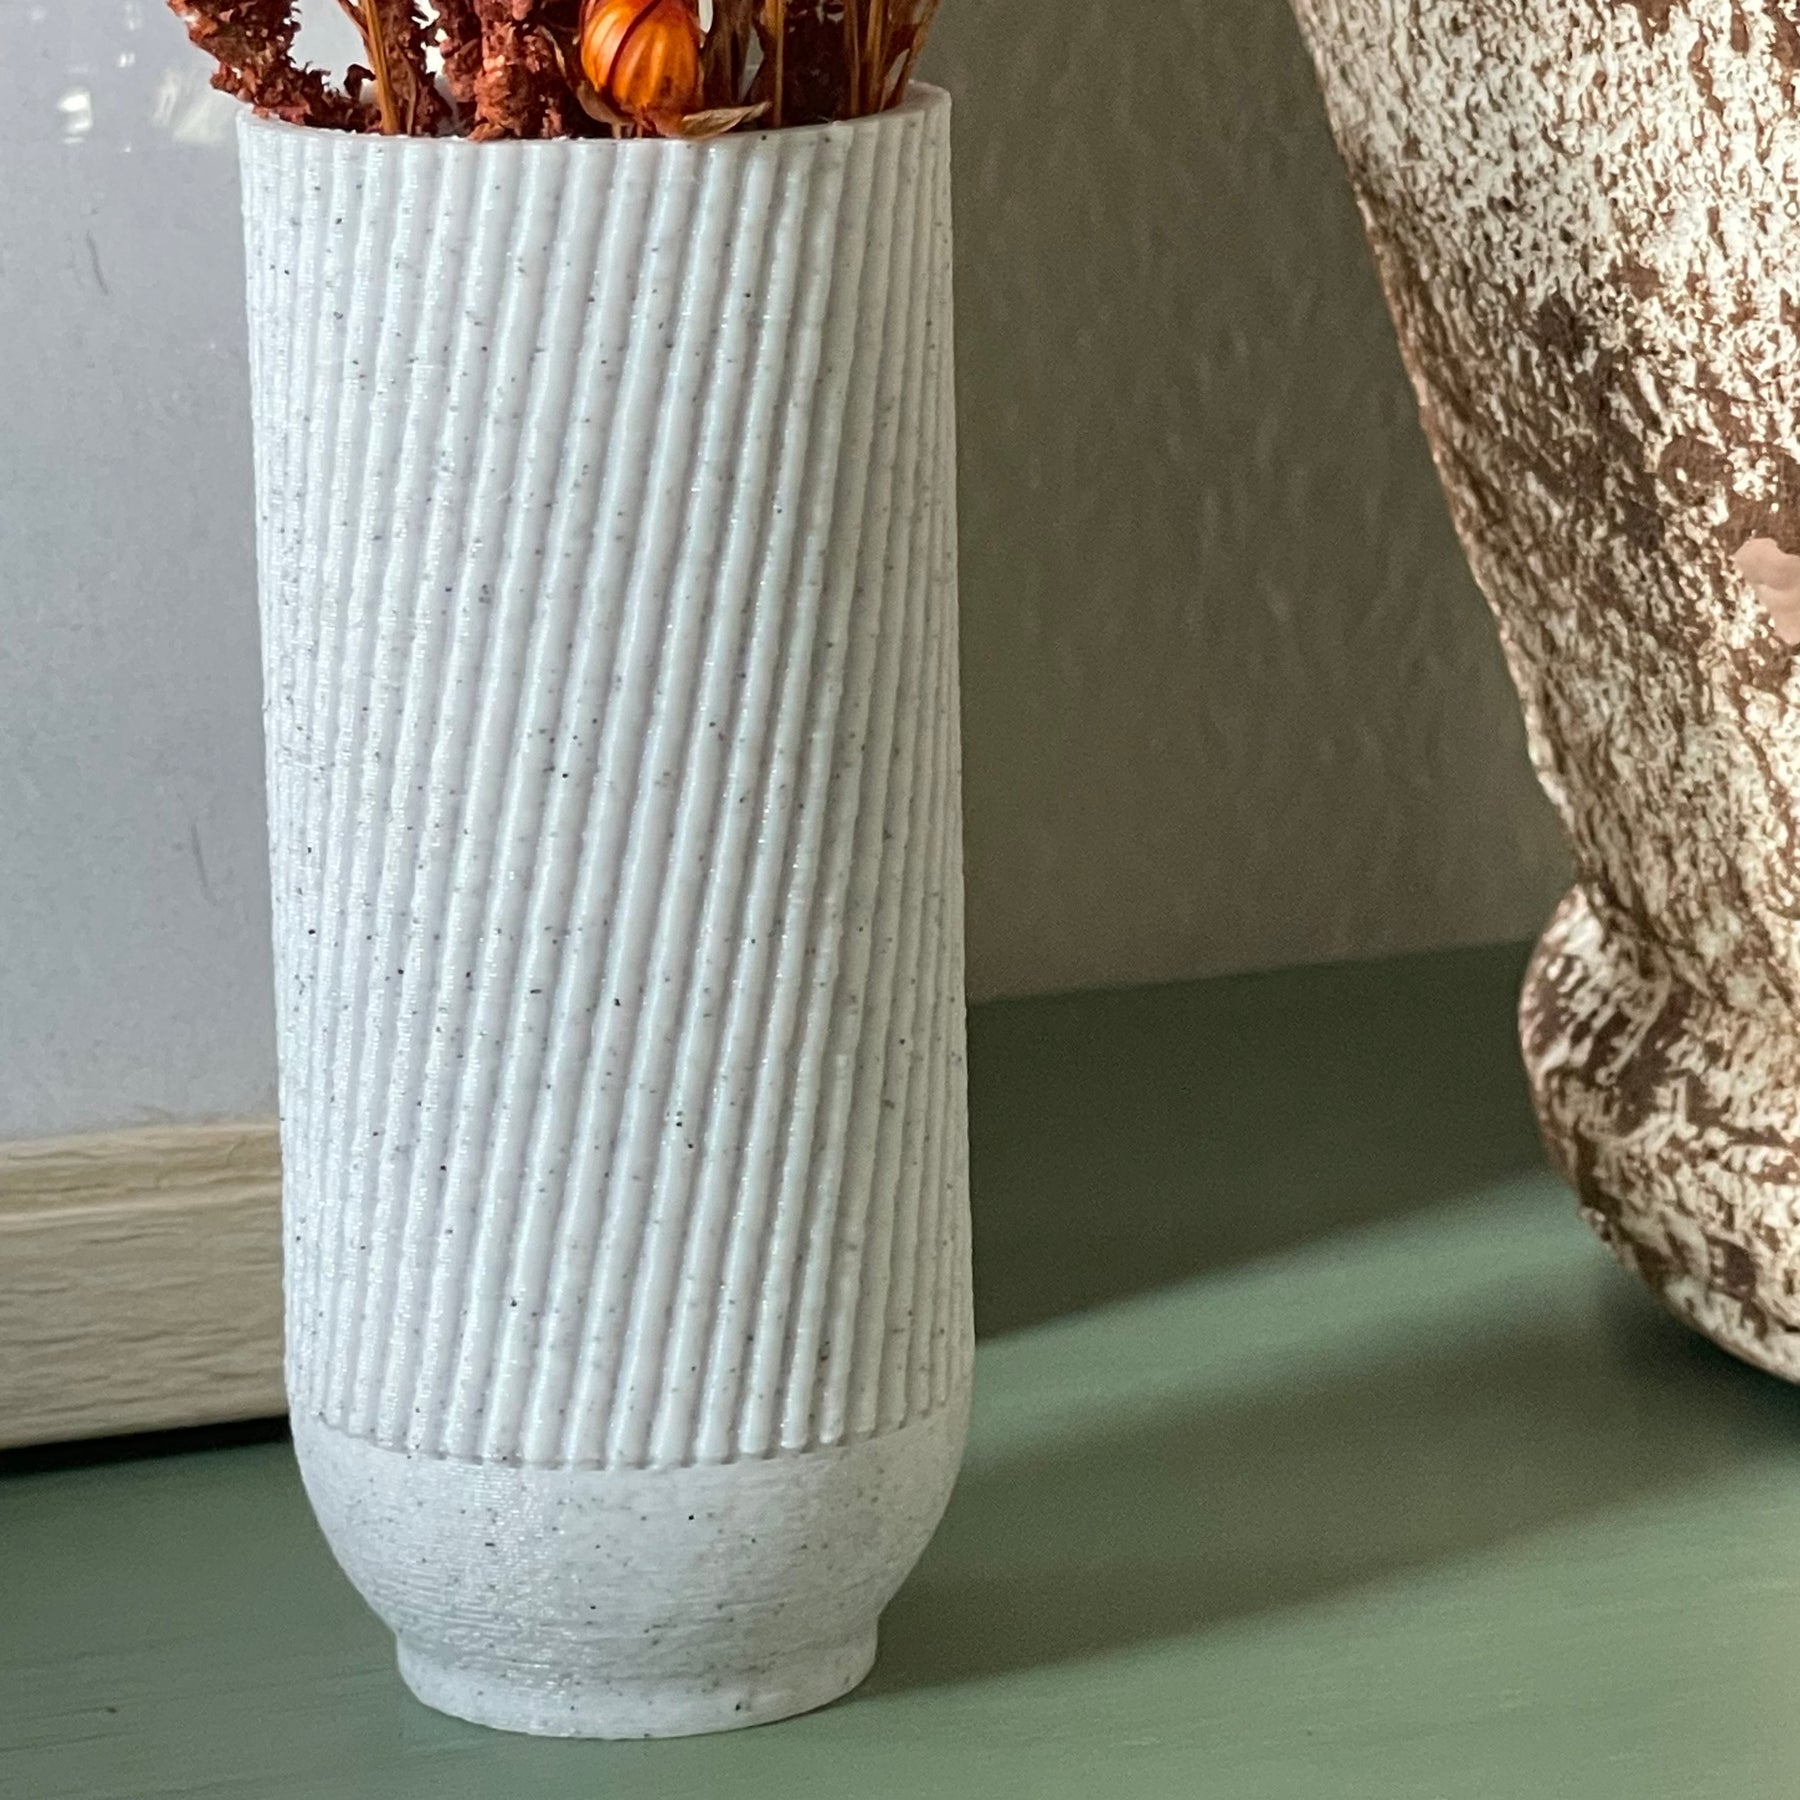 Vase Design 01.1 - Spline